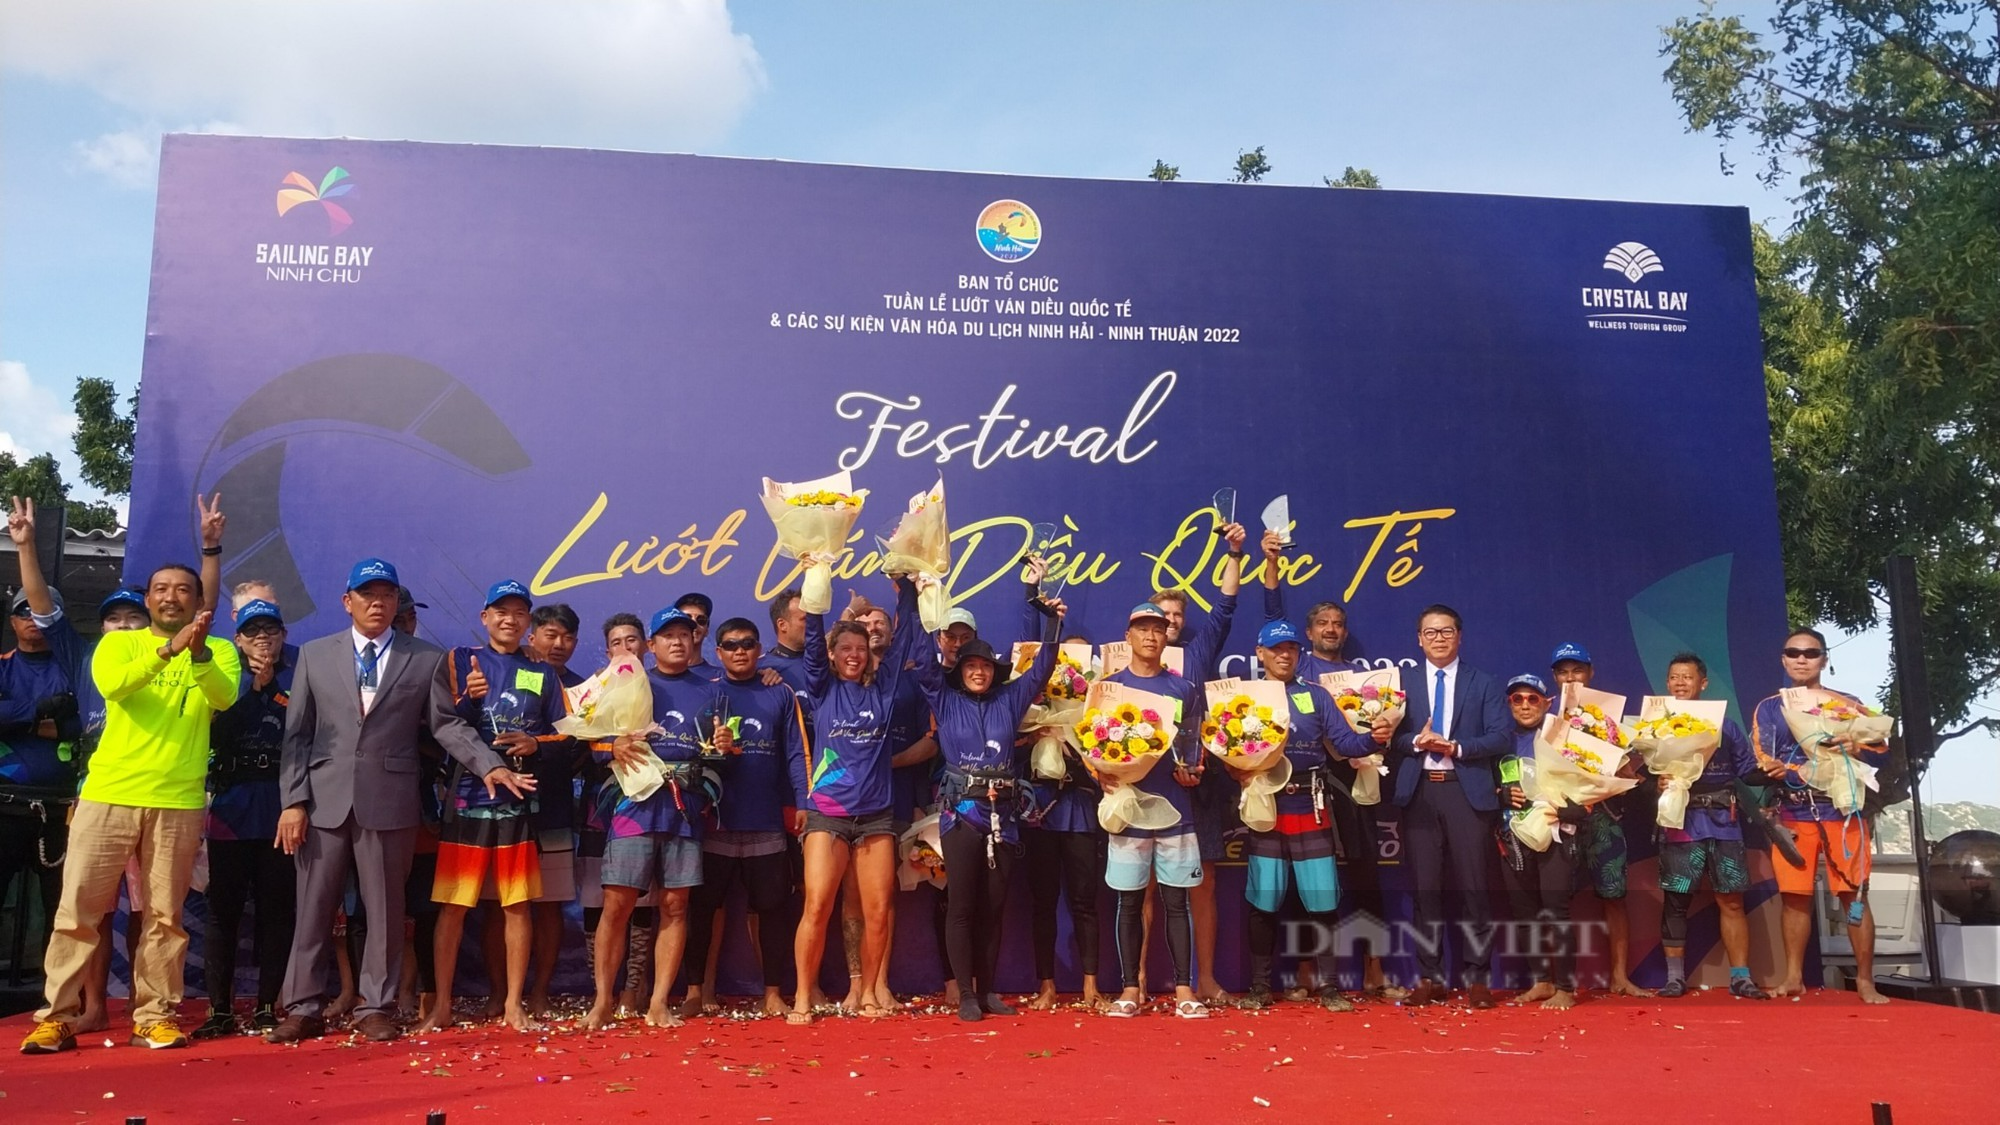 “Mãn nhãn” với bức tranh đầy màu sắc Festival lướt ván diều Quốc tế Sailing Bay Ninh Chử năm 2022 - Ảnh 1.